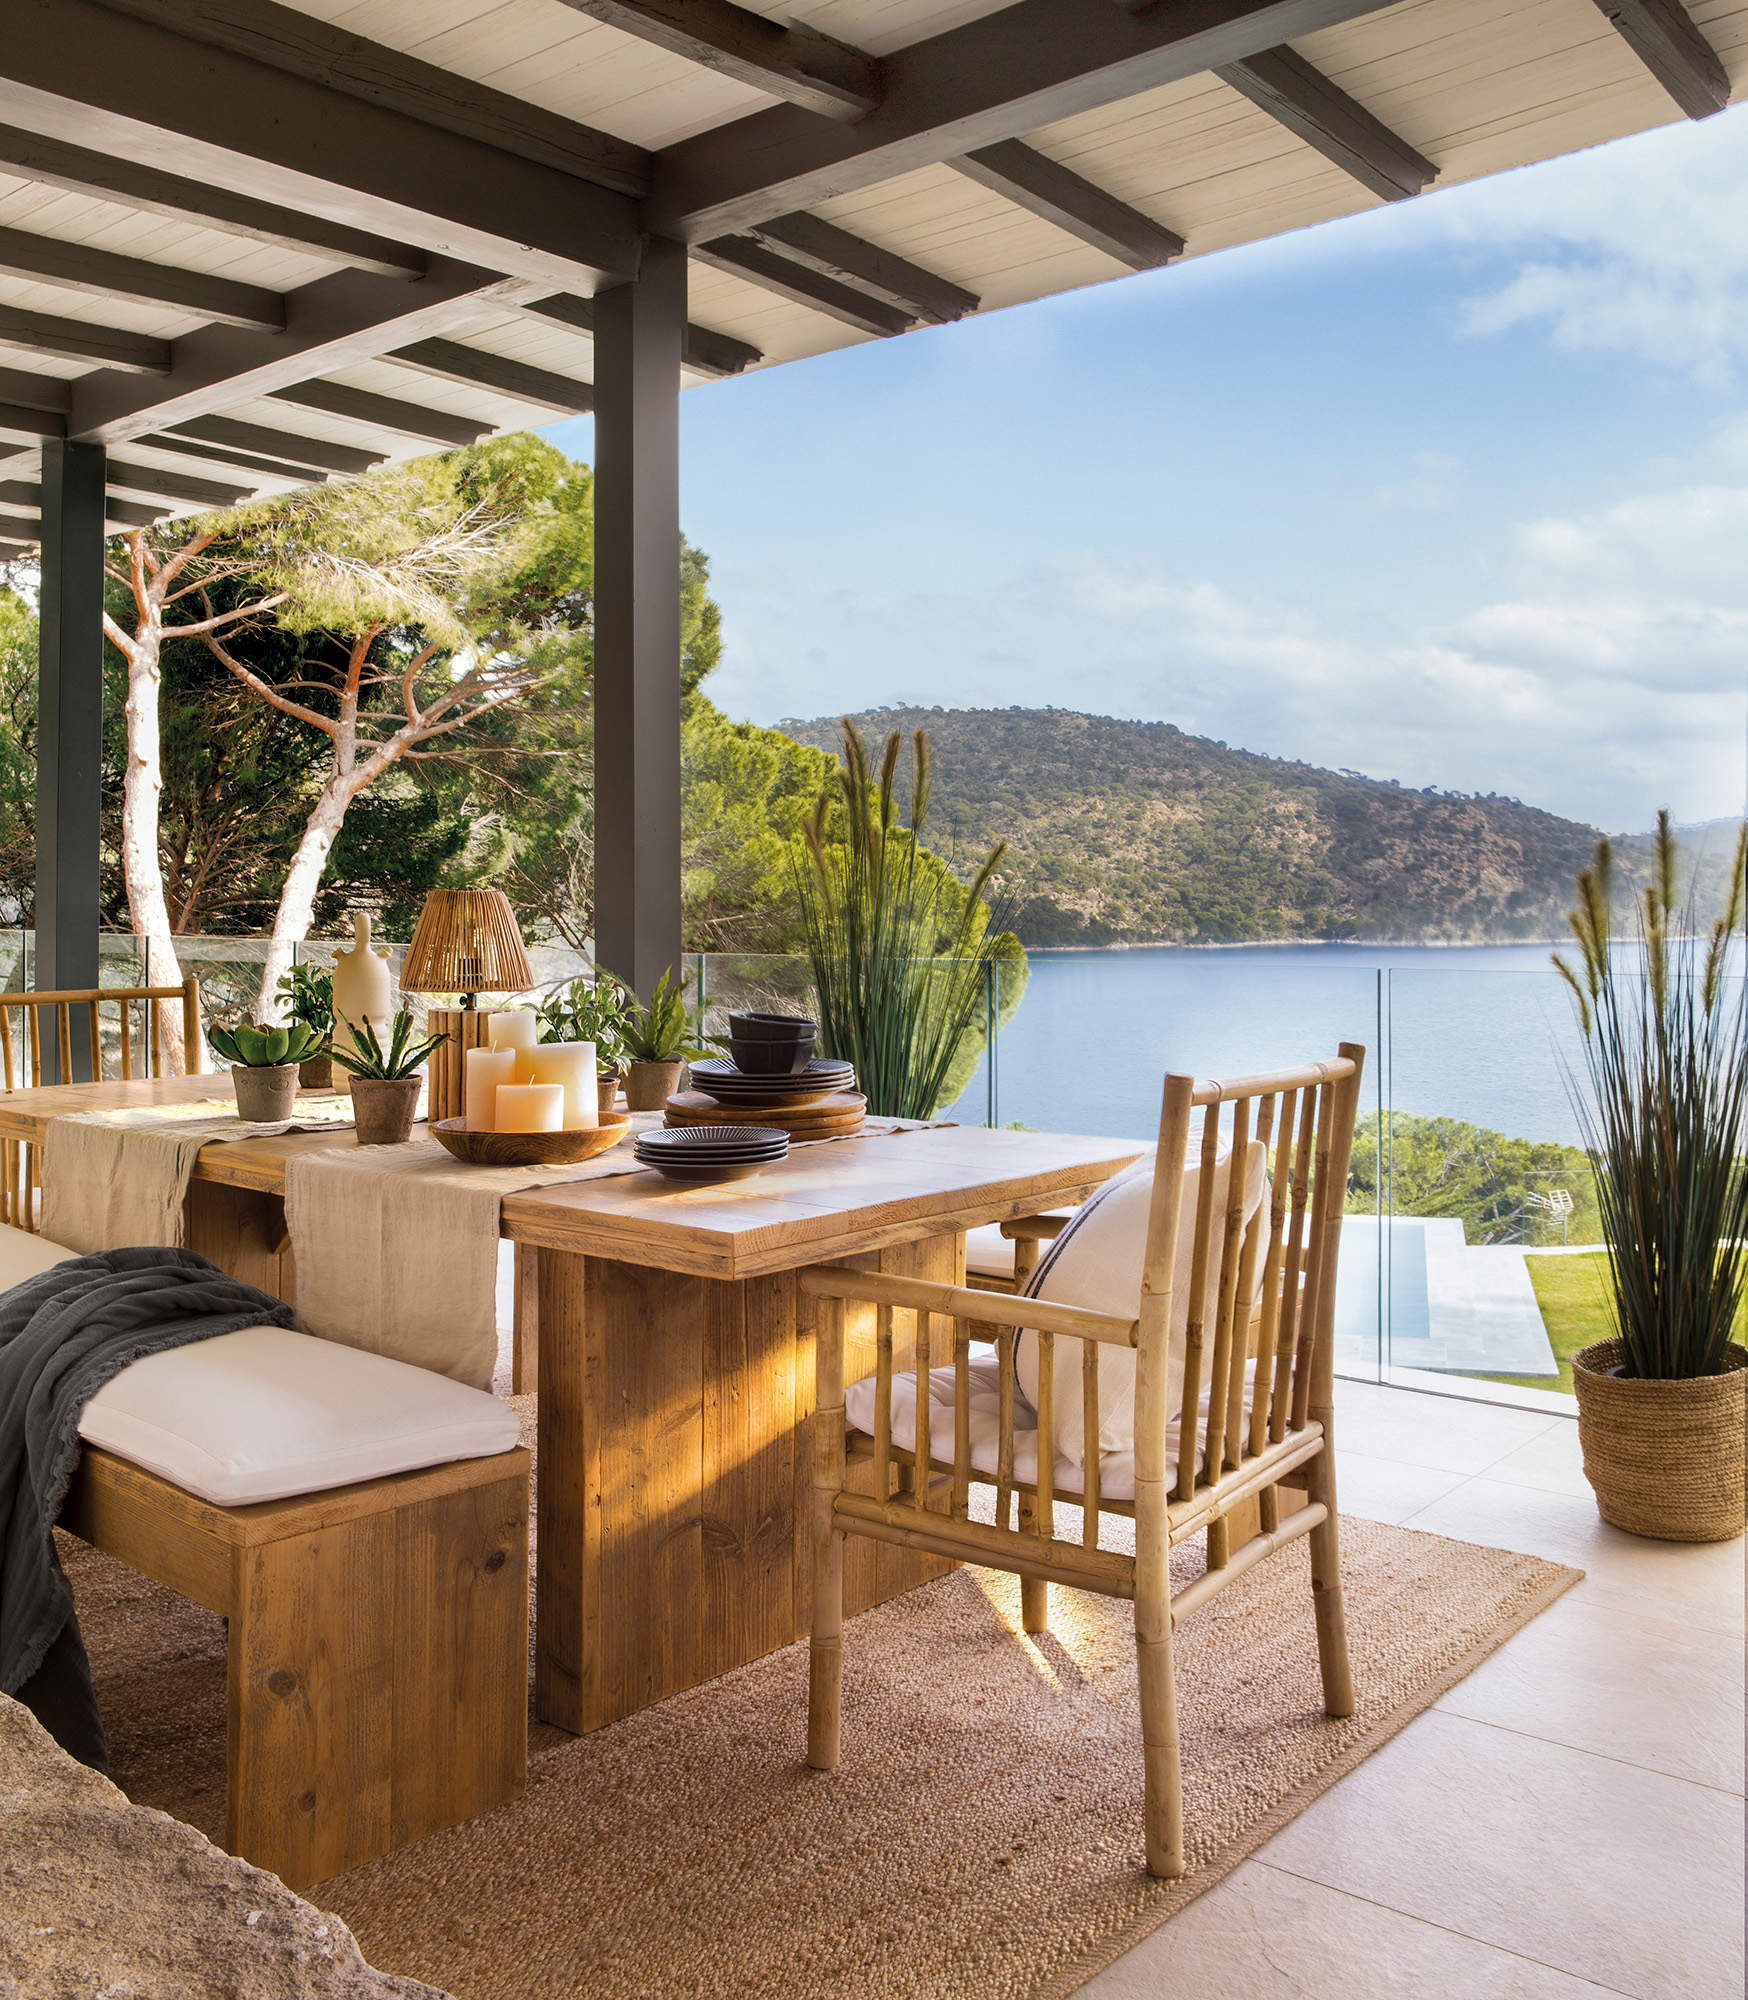 Terraza de estilo natural con mesa, sillas y bancos